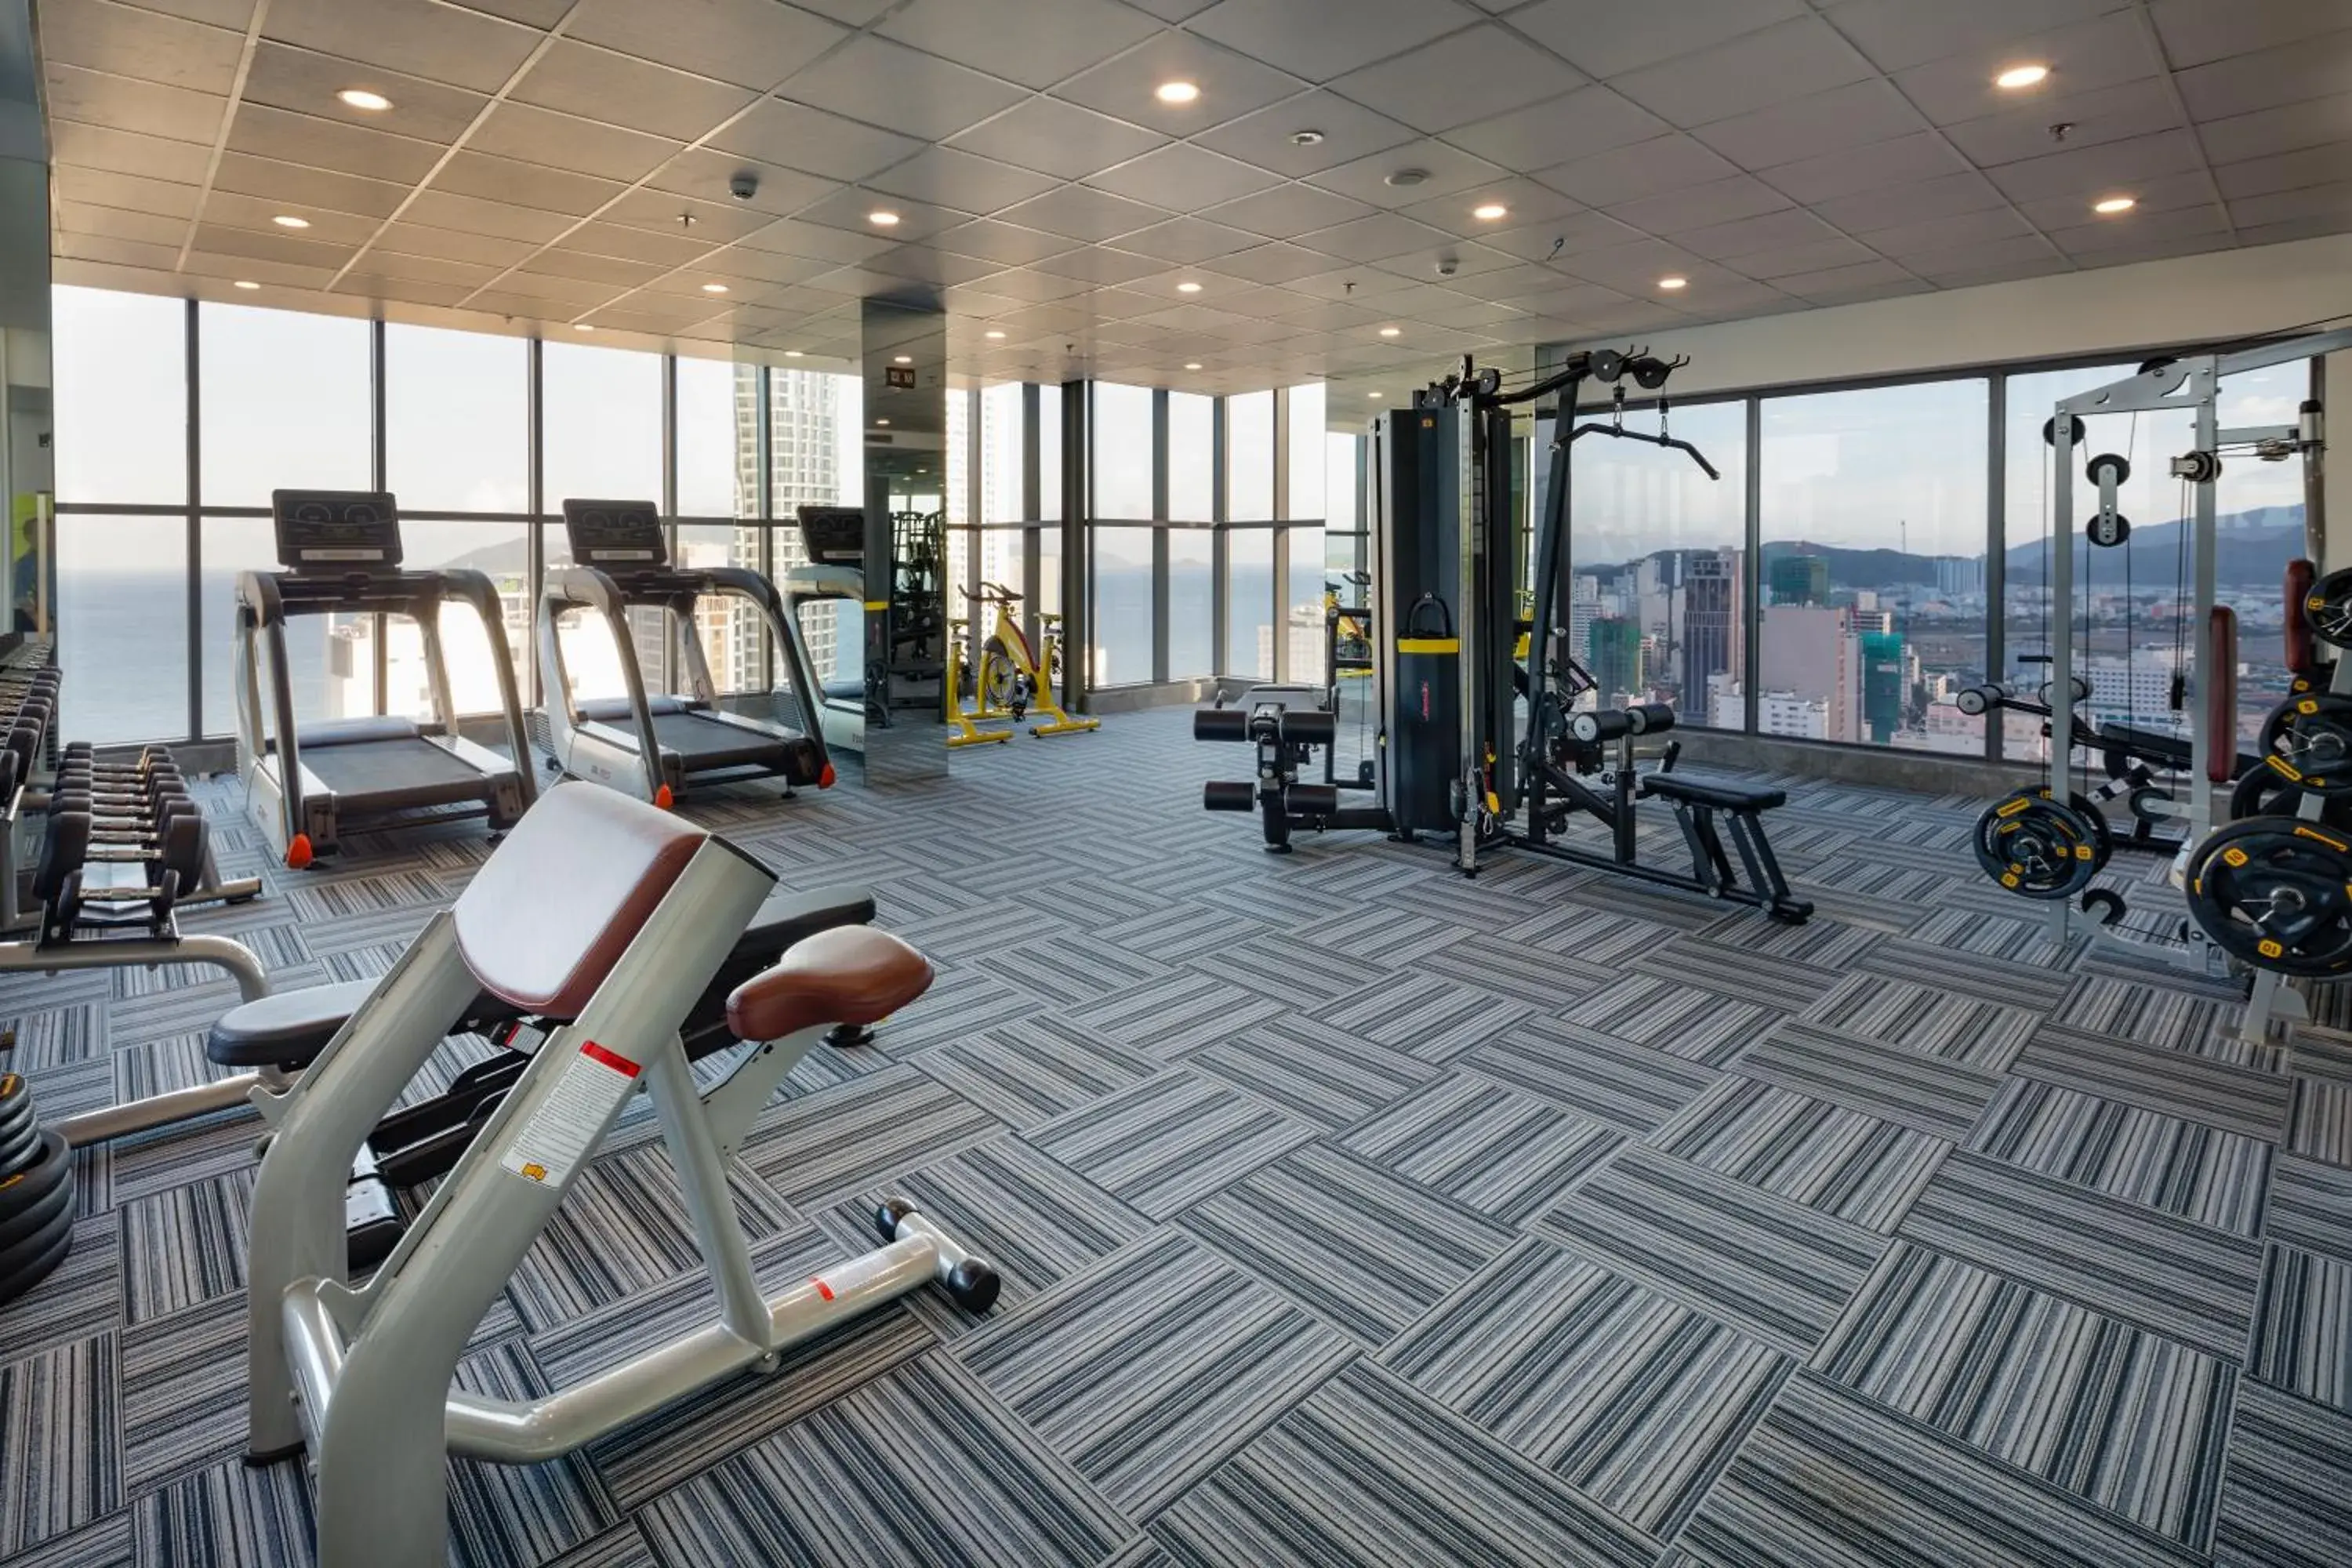 Fitness centre/facilities, Fitness Center/Facilities in Virgo Hotel